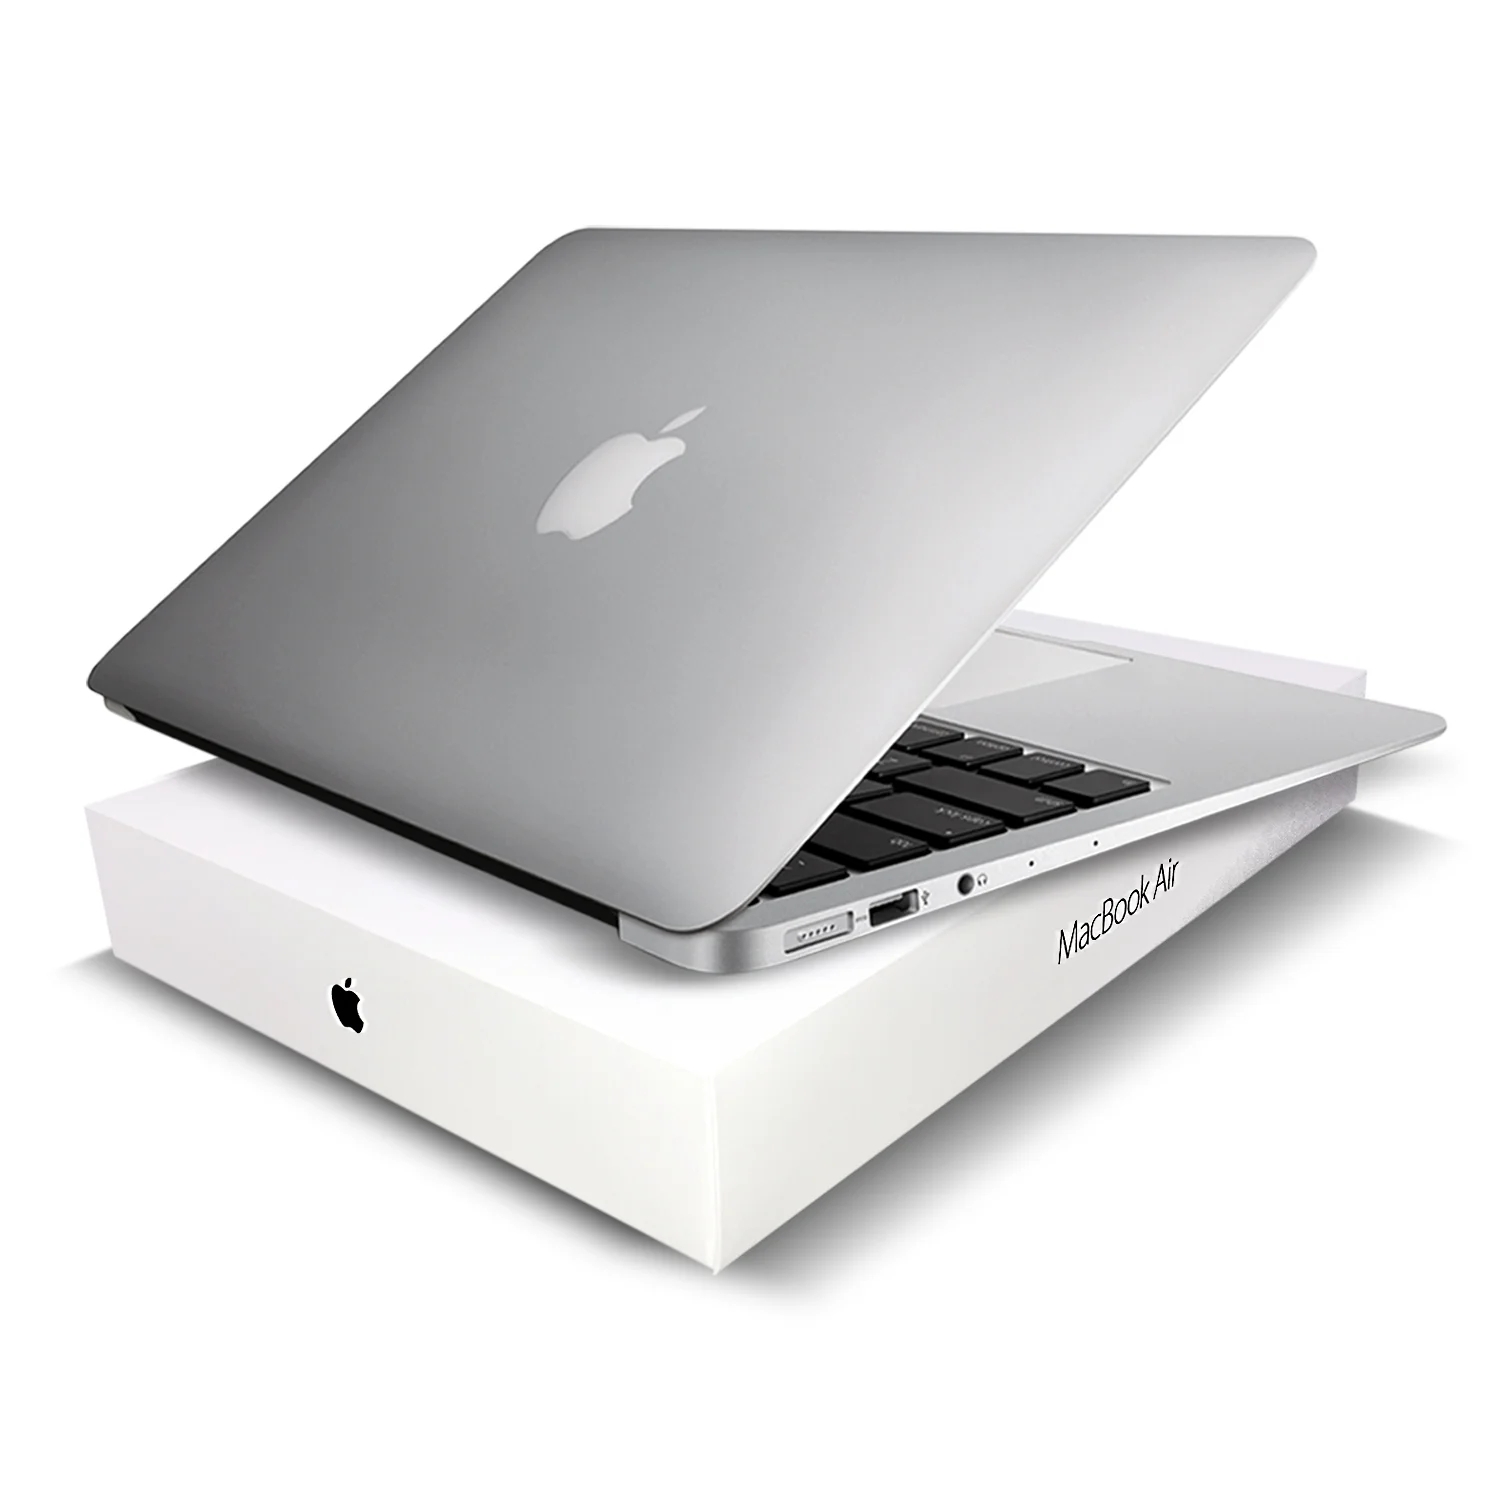 苹果上架 M2 款翻新版 MacBook Air 13 英寸笔记本，只比双 11 全新价便宜 29 元 - 哔哩哔哩